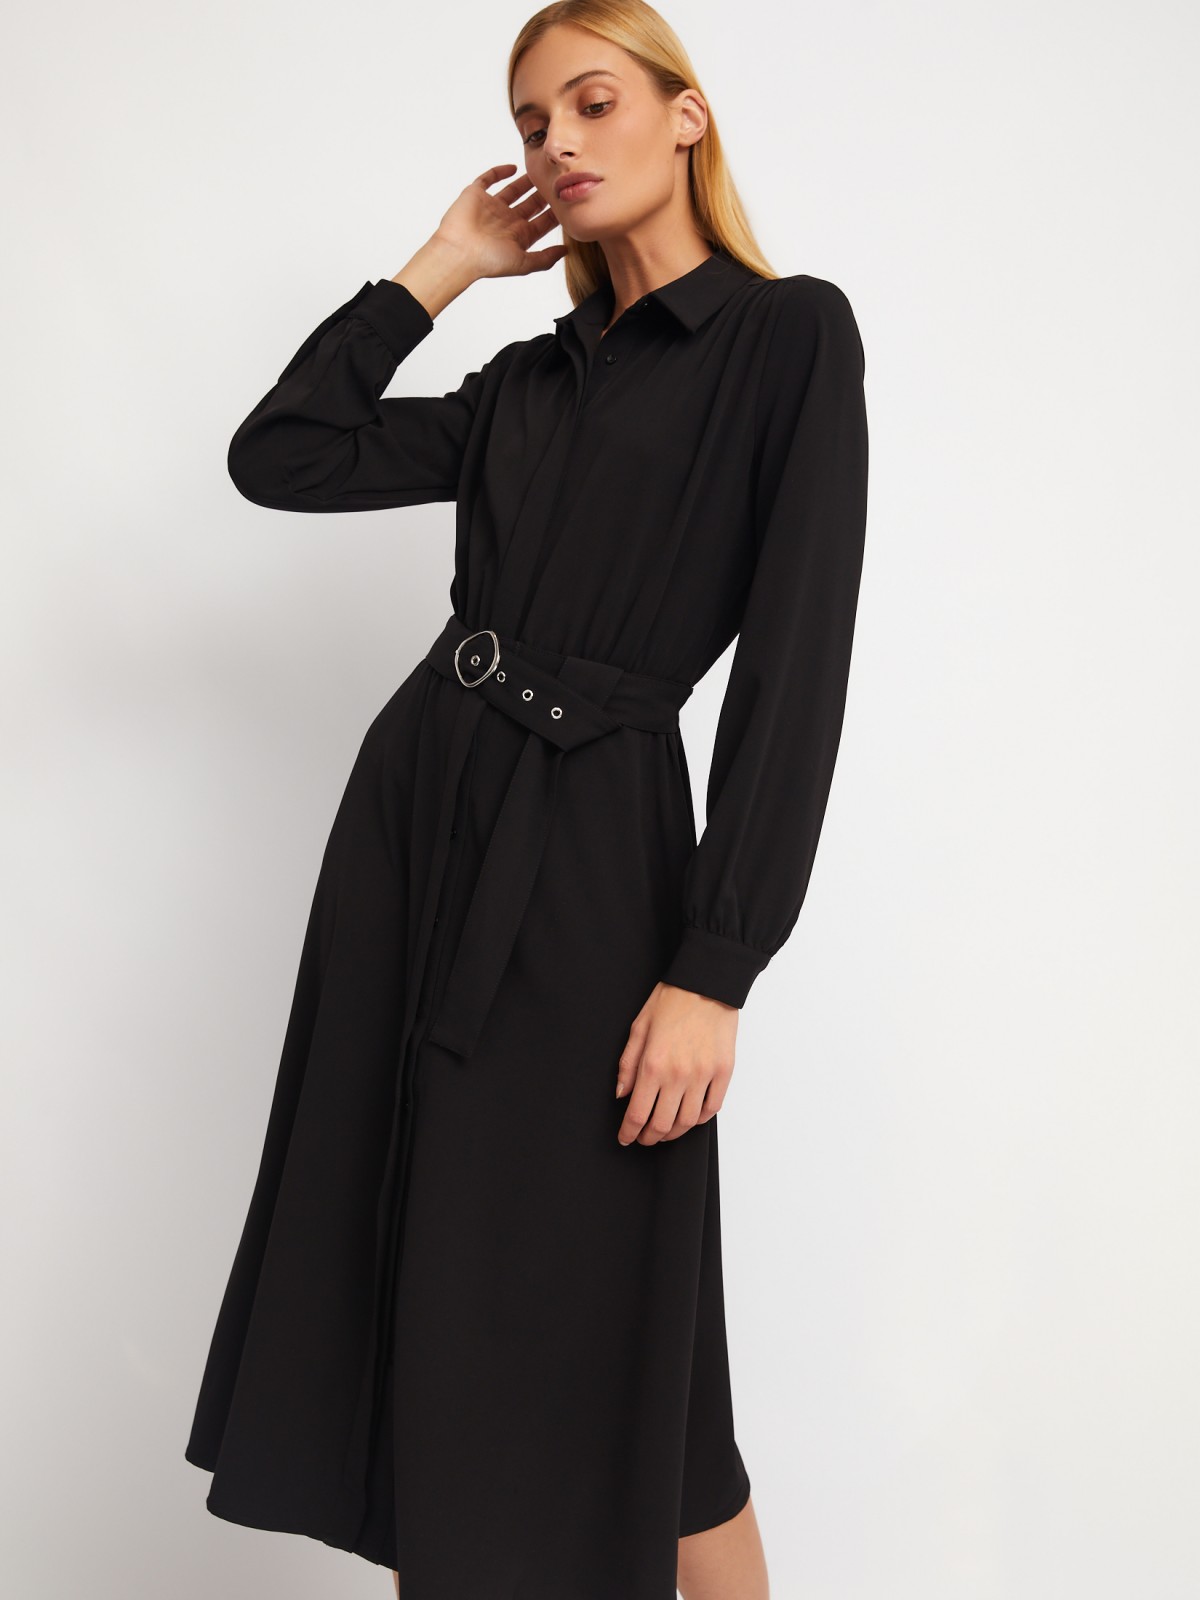 Платье-рубашка длины миди с воротником и акцентном на талии zolla 024118208223, цвет черный, размер XS - фото 3